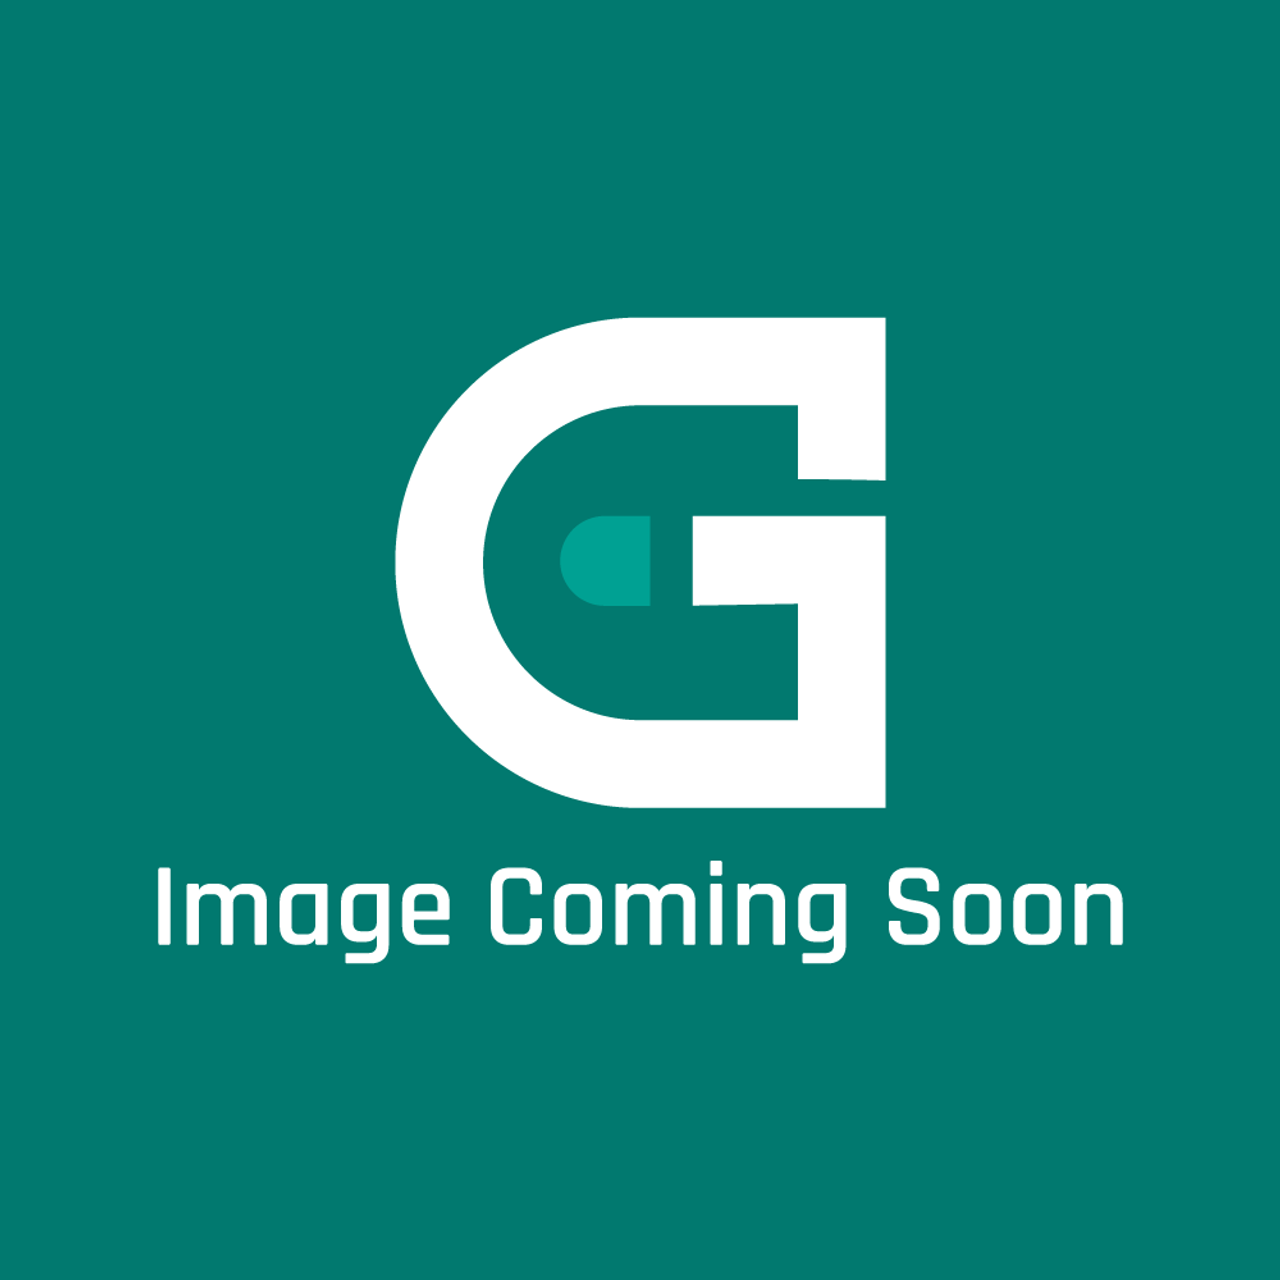 LG 3890TSE921E - Box - Image Coming Soon!